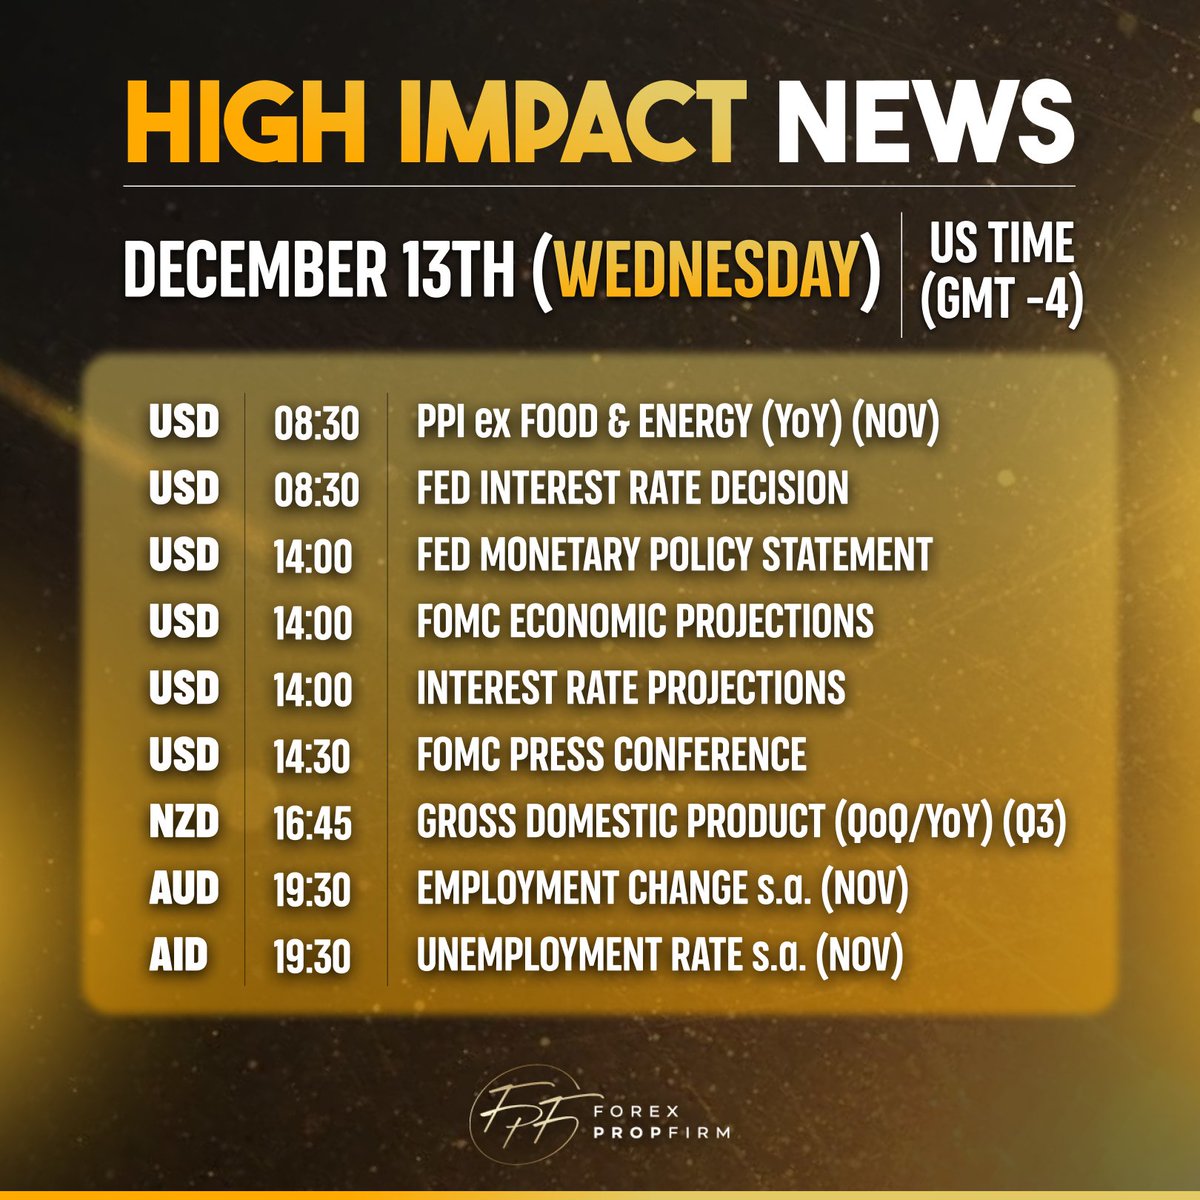 Critical Market Alert: High Impact News for Wednesday, December 13th, 2023 📢 
.
.
.
#HighImpact #News #Alert